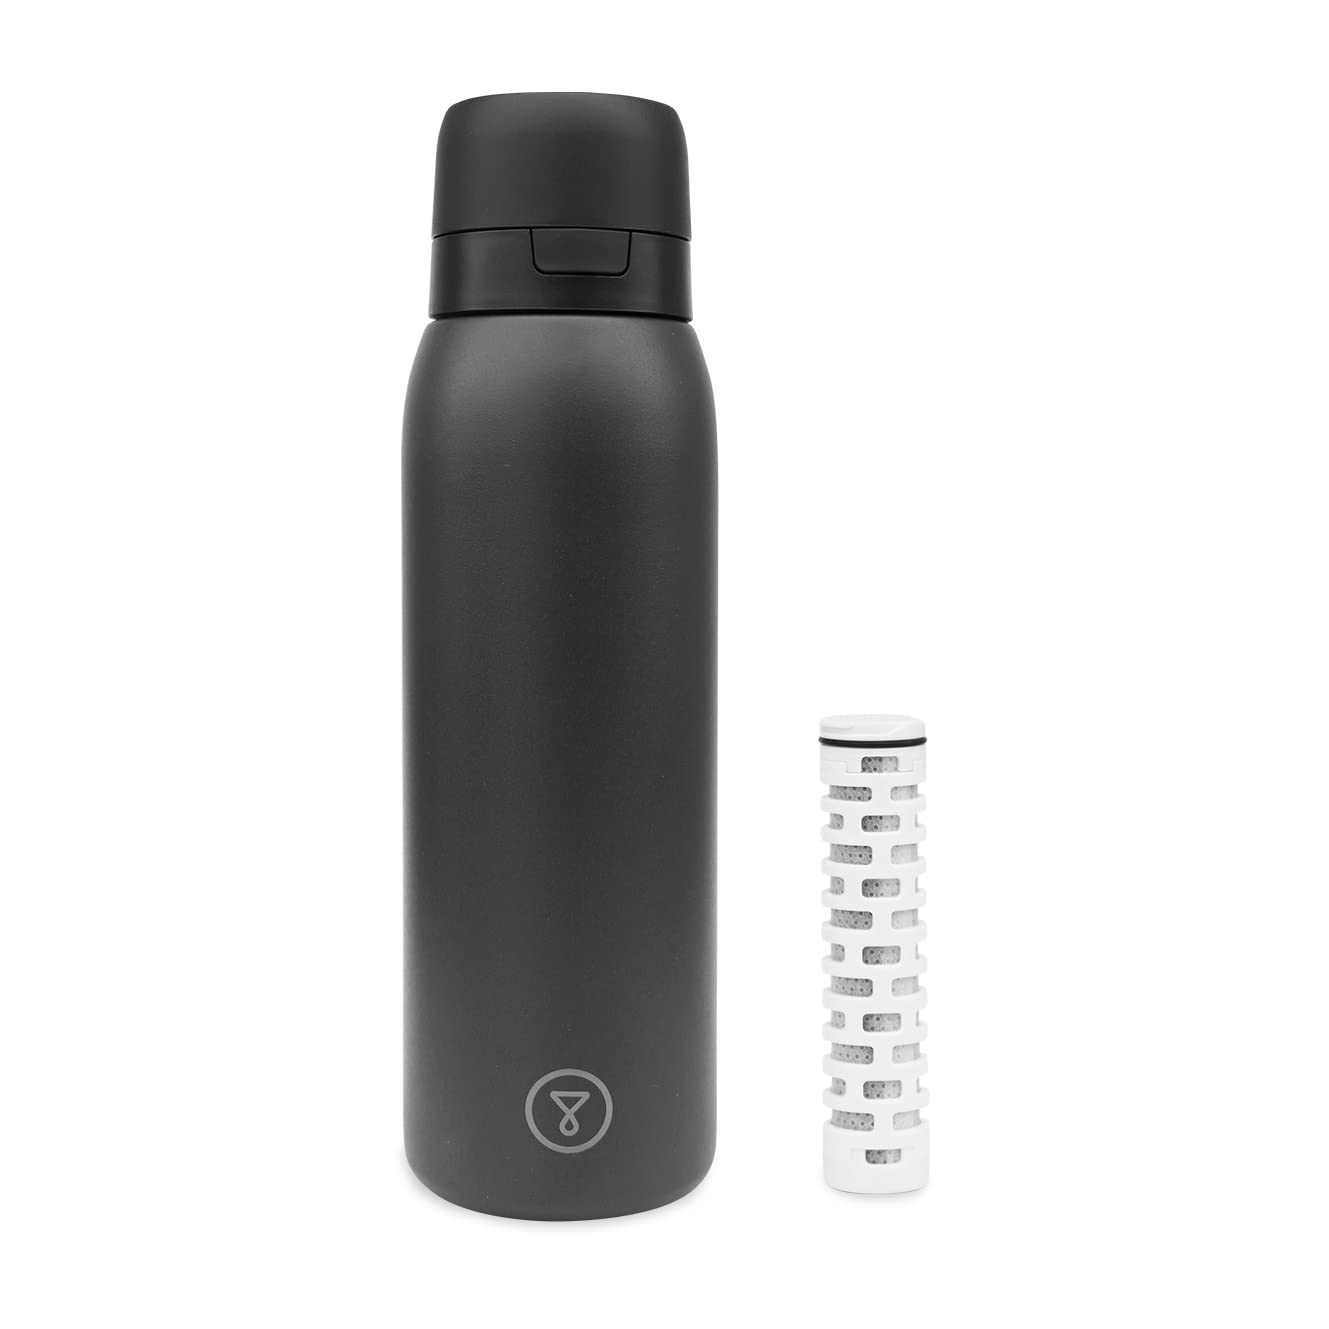 Tappwater BottlePro - Wiederverwendbare Wasserfilterflasche Filtert +80 Schadstoffe, BPA frei. Nachhaltige Kartuschen und luftdichter Verschluss. 750 ml (Schwarz)